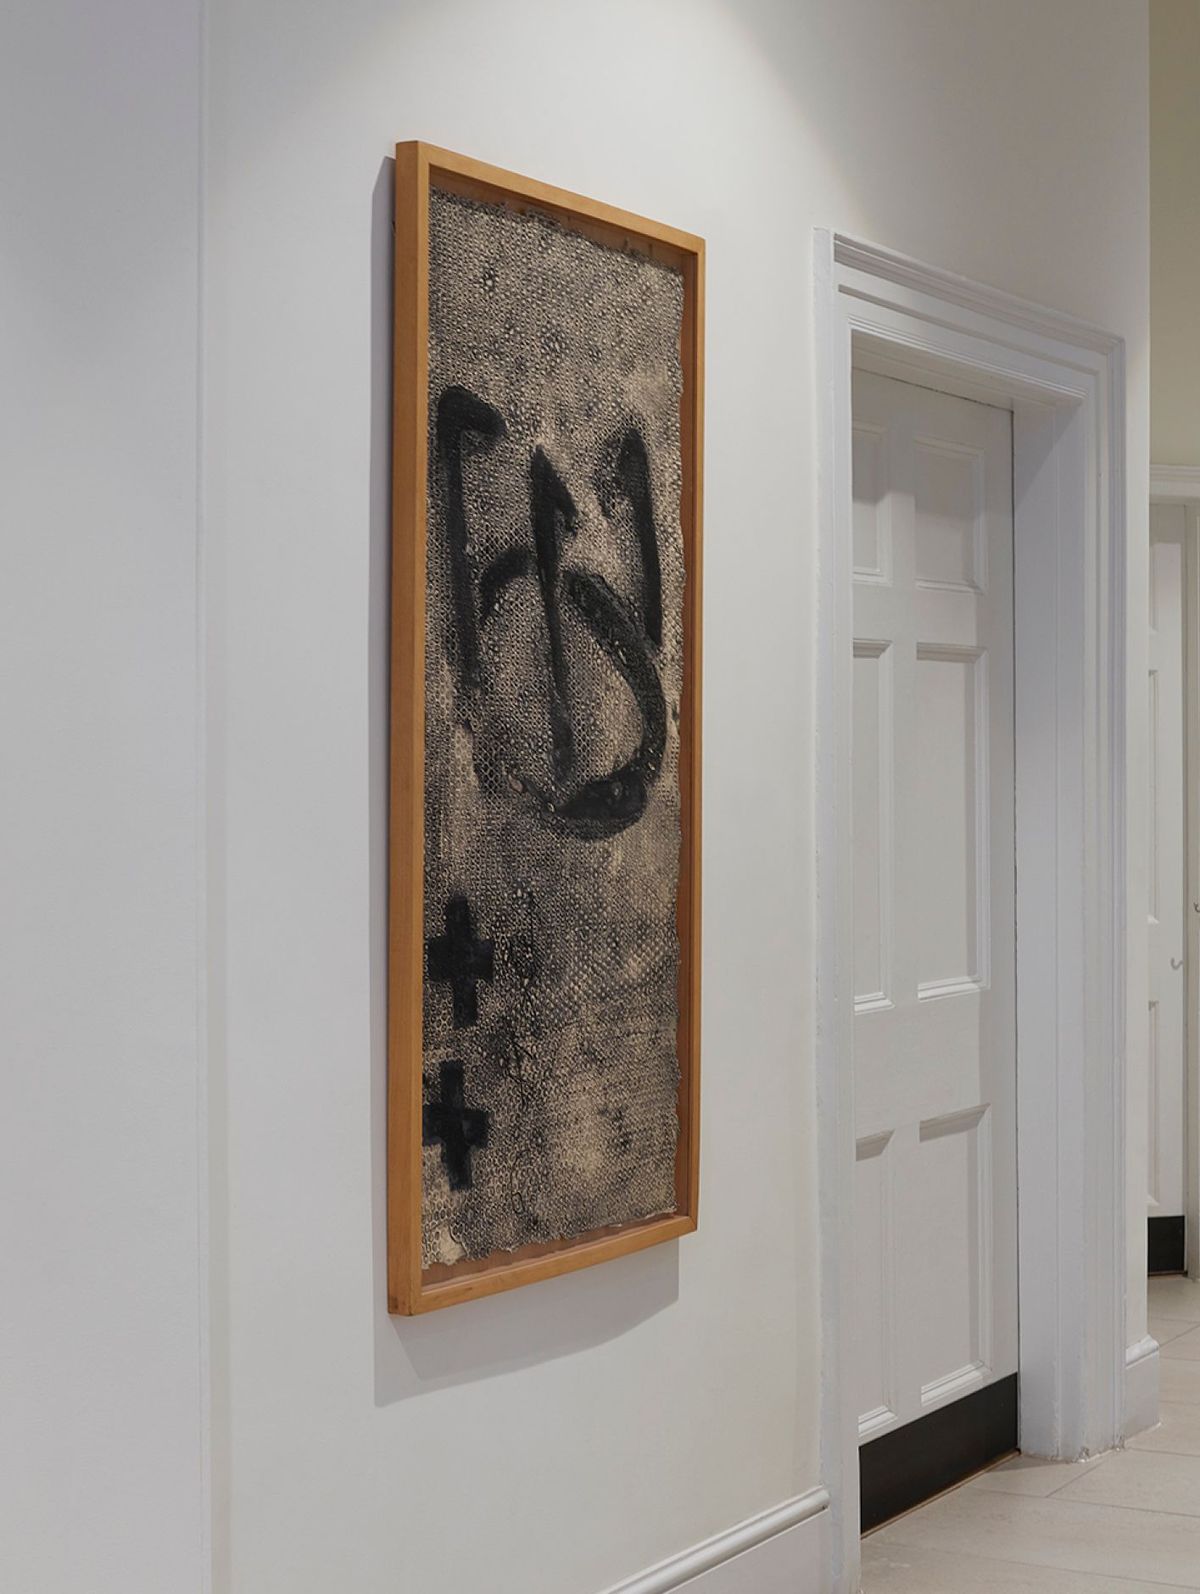 Antoni Tàpies, Trespeus, 1990. Etching, carborundum, mixed media and collage 138 x 69.5 cm